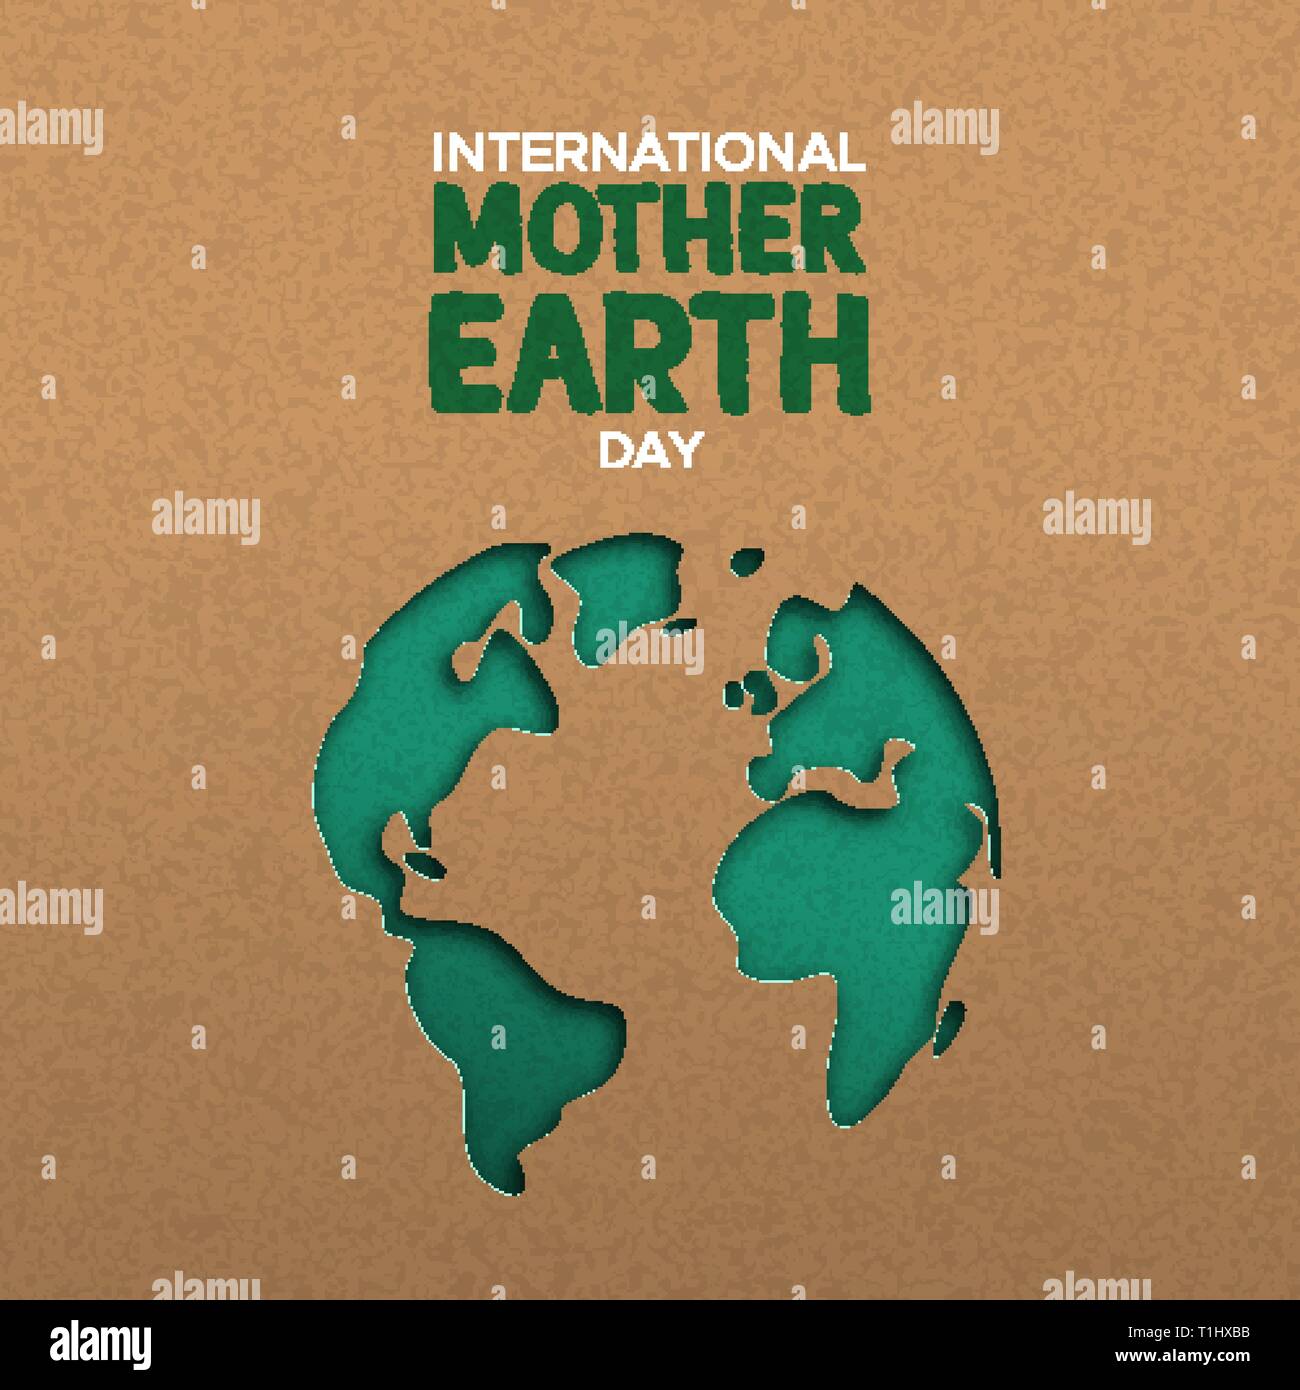 La Journée internationale de la Terre nourricière illustration de papercut vert carte du monde. Papier recyclé pour la sensibilisation à la conservation de la planète. Illustration de Vecteur